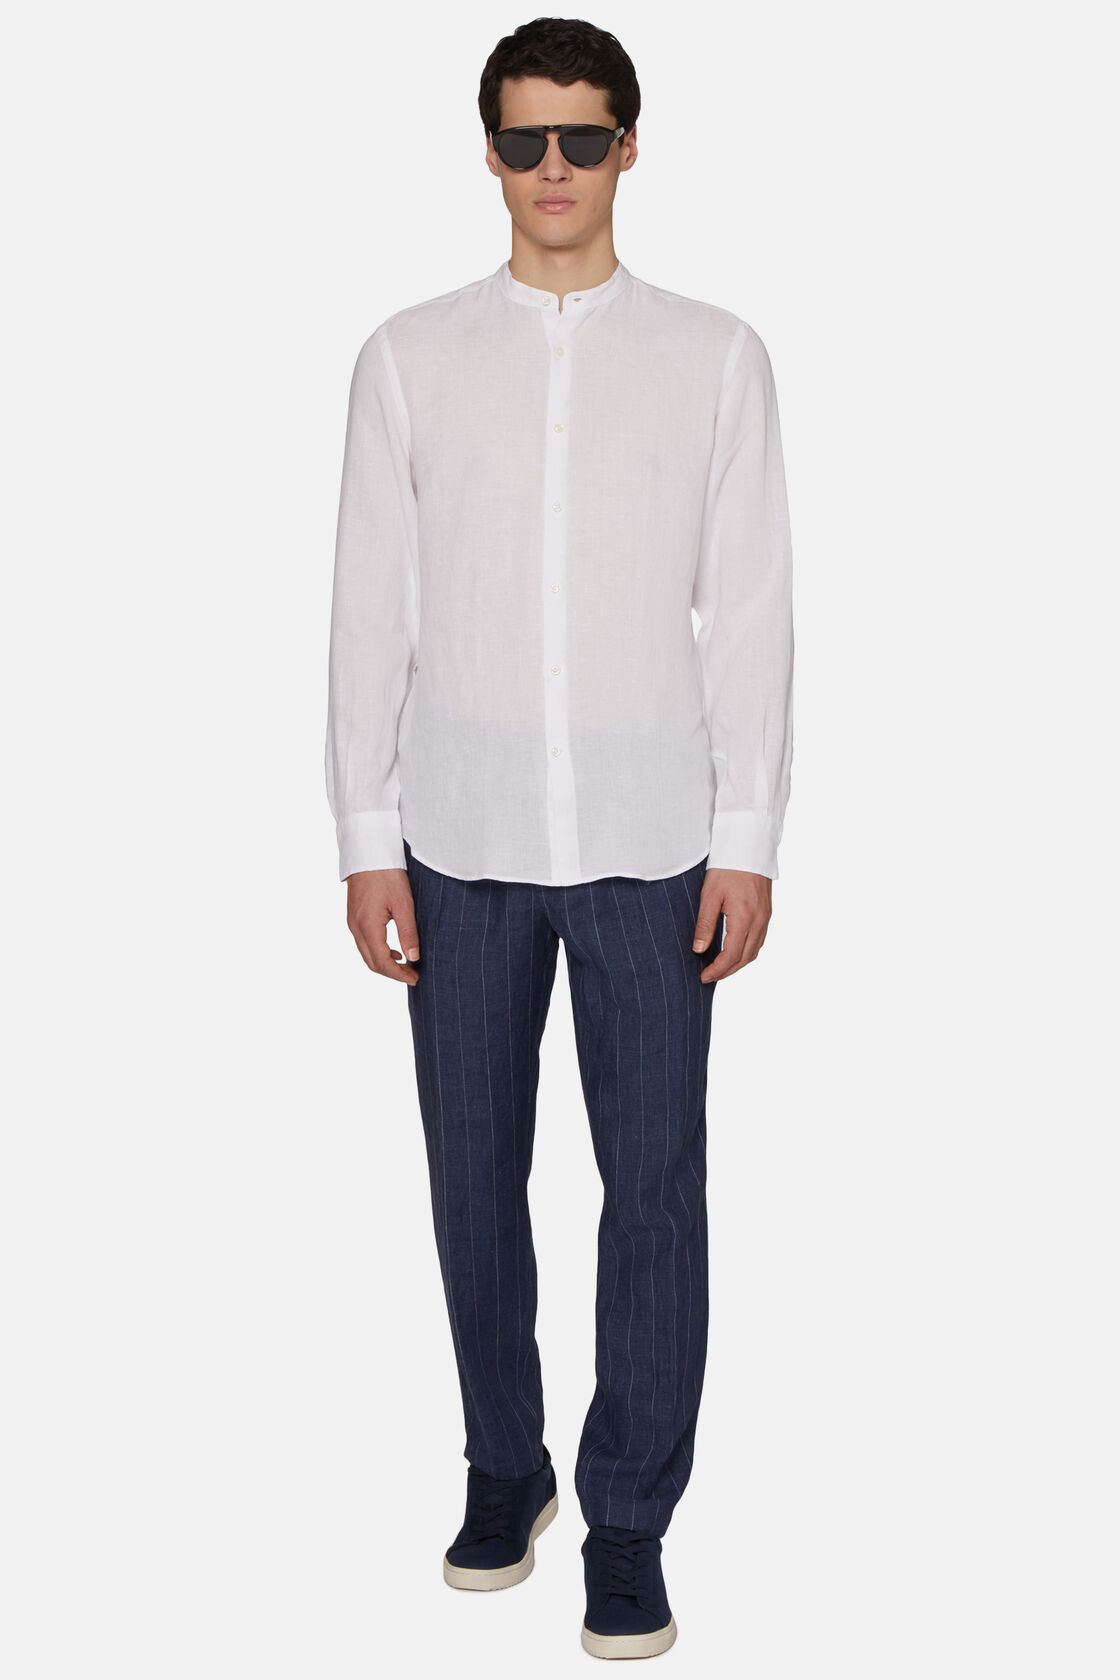 Λευκό βαμβακερό πουκάμισο κανονικής εφαρμογής, White, hi-res